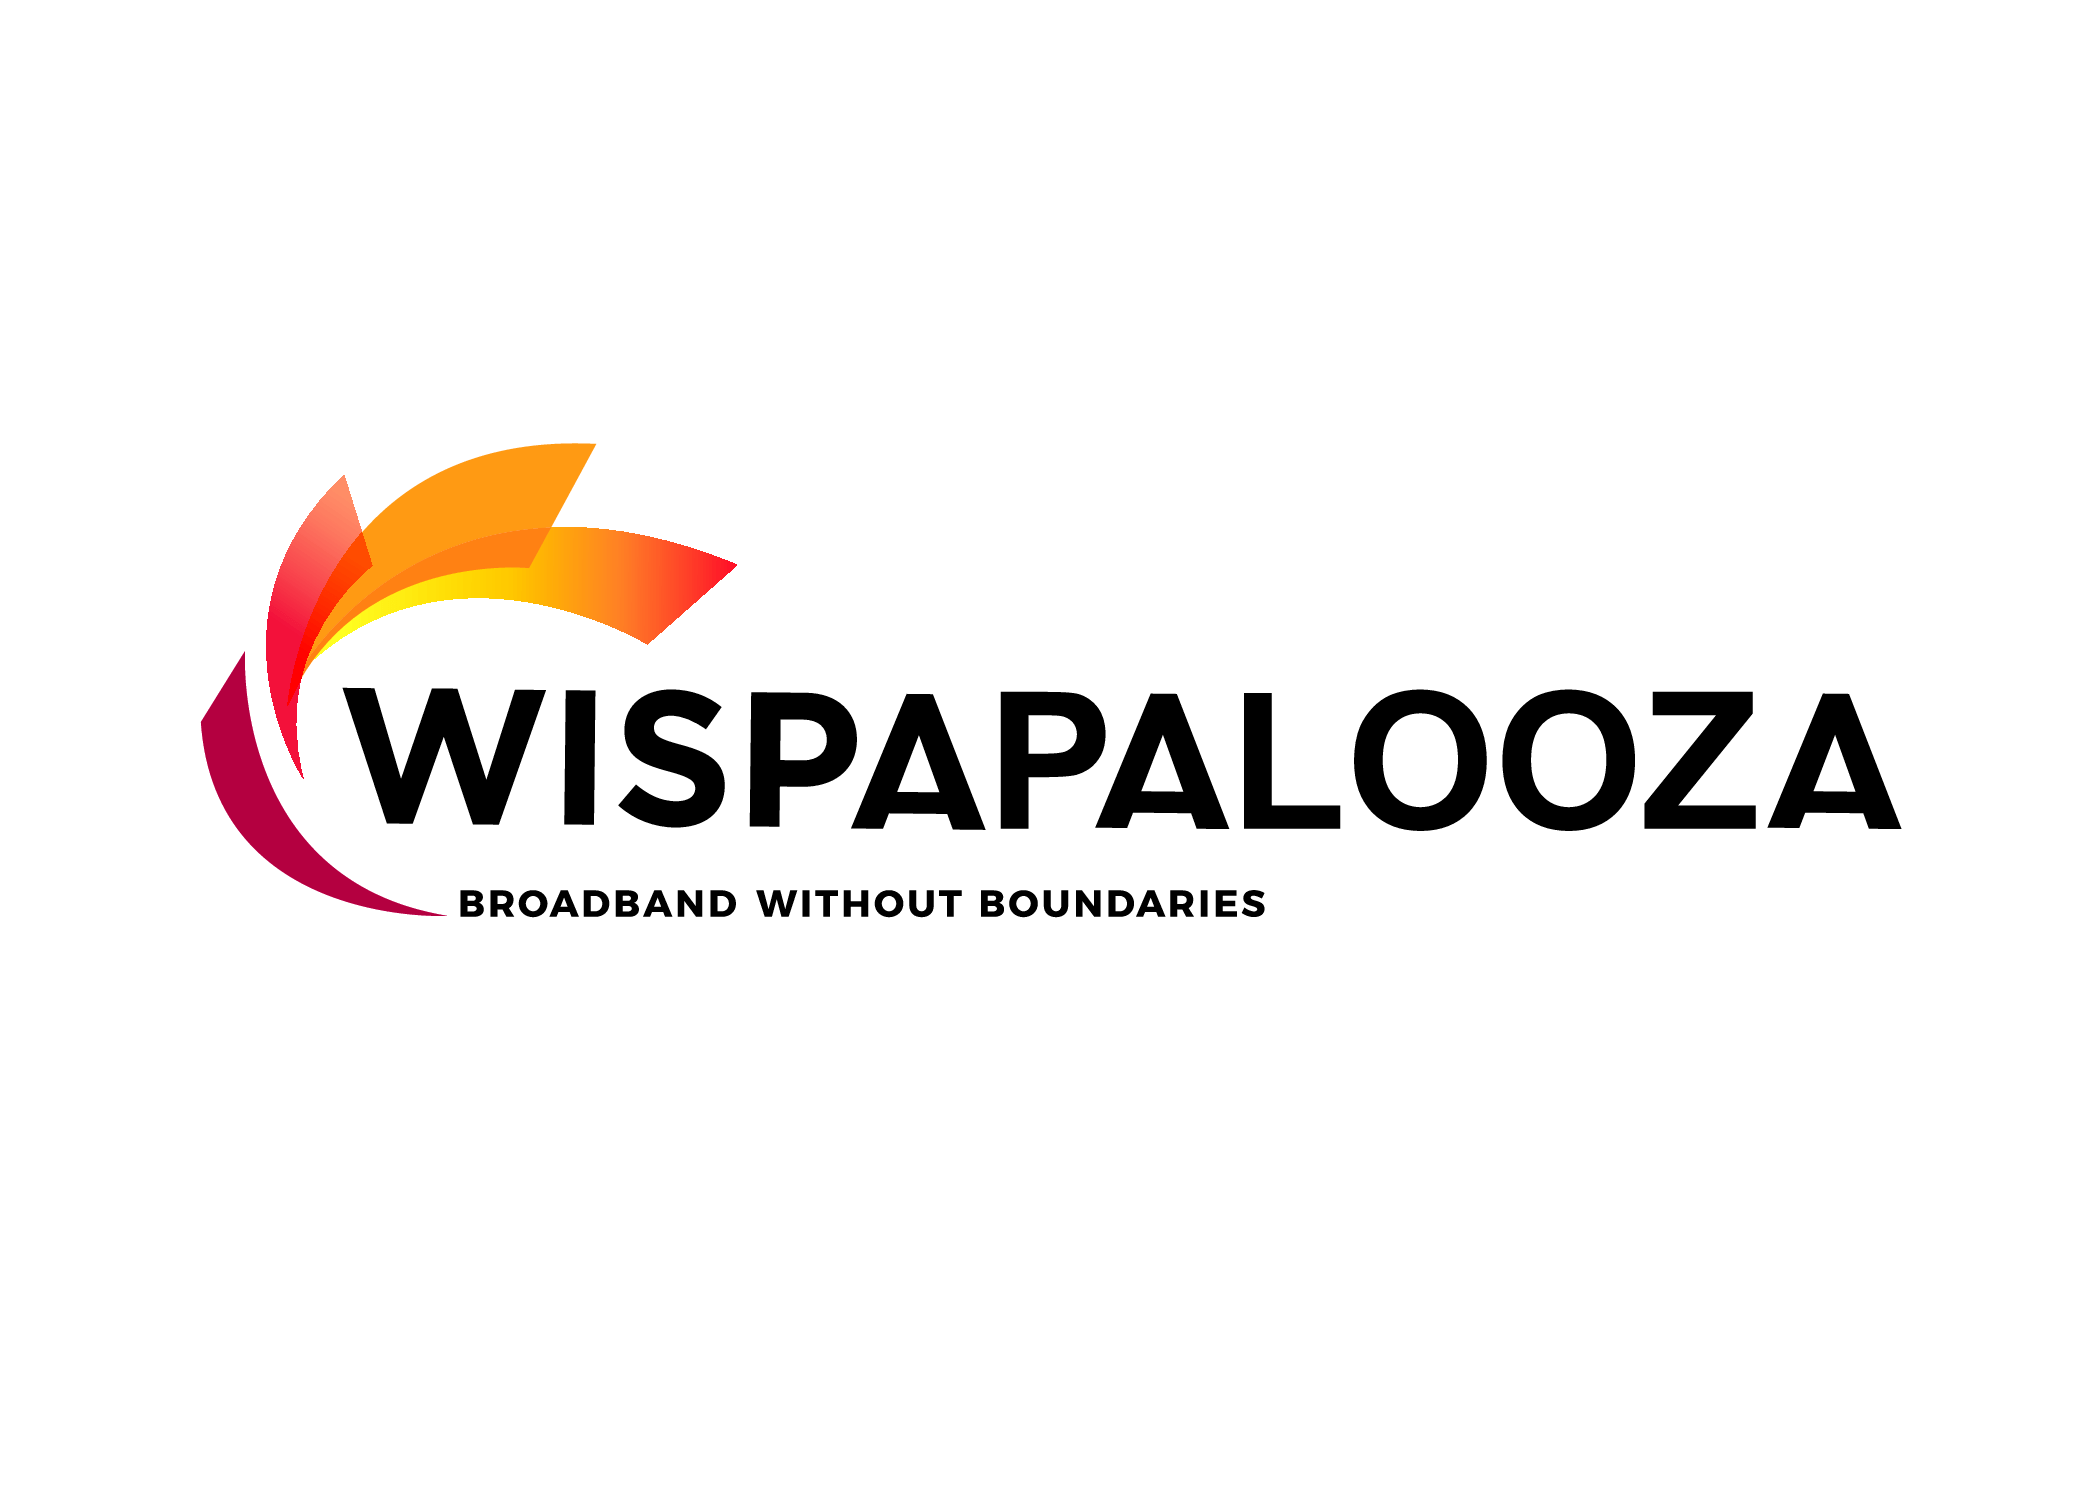 Wispapalooza logo